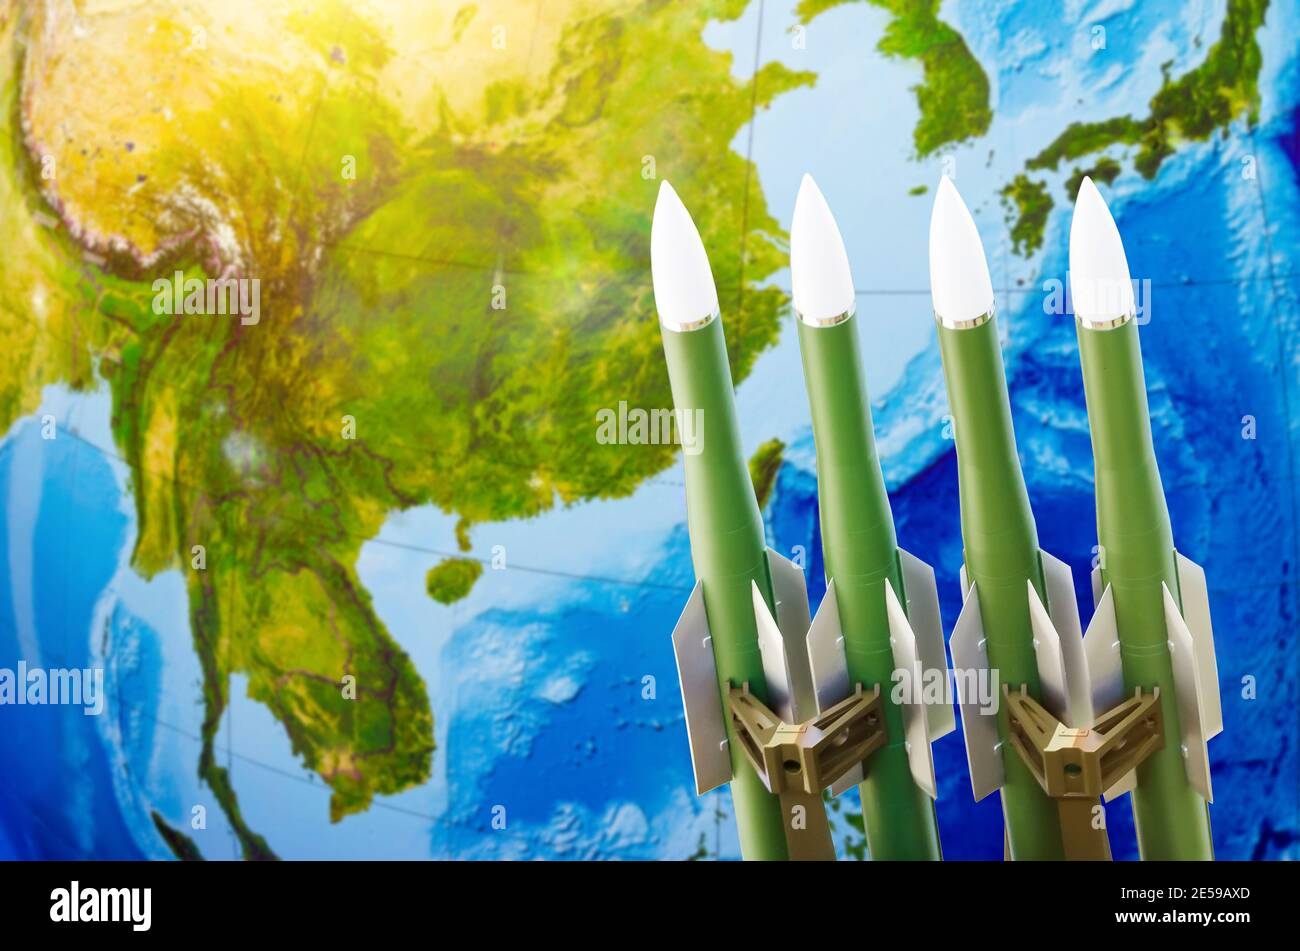 Course aux armes, armes nucléaires, menace de guerre dans le monde. Des roquettes sur le fond de l'Asie - Chine, Japon, Corée Banque D'Images